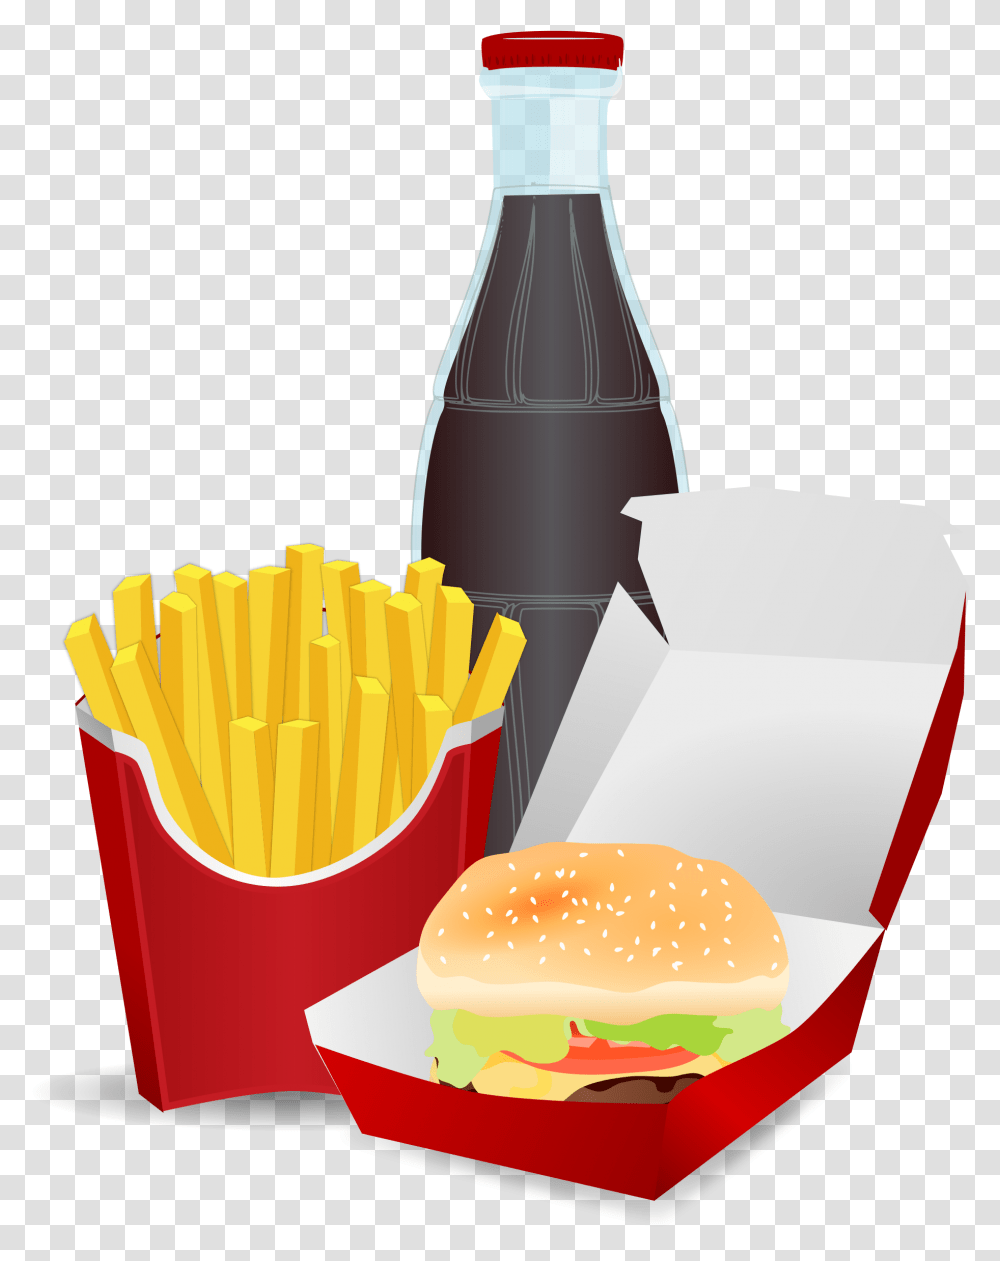 Alimentos No Saludables Dibujos, Fries, Food, Burger Transparent Png